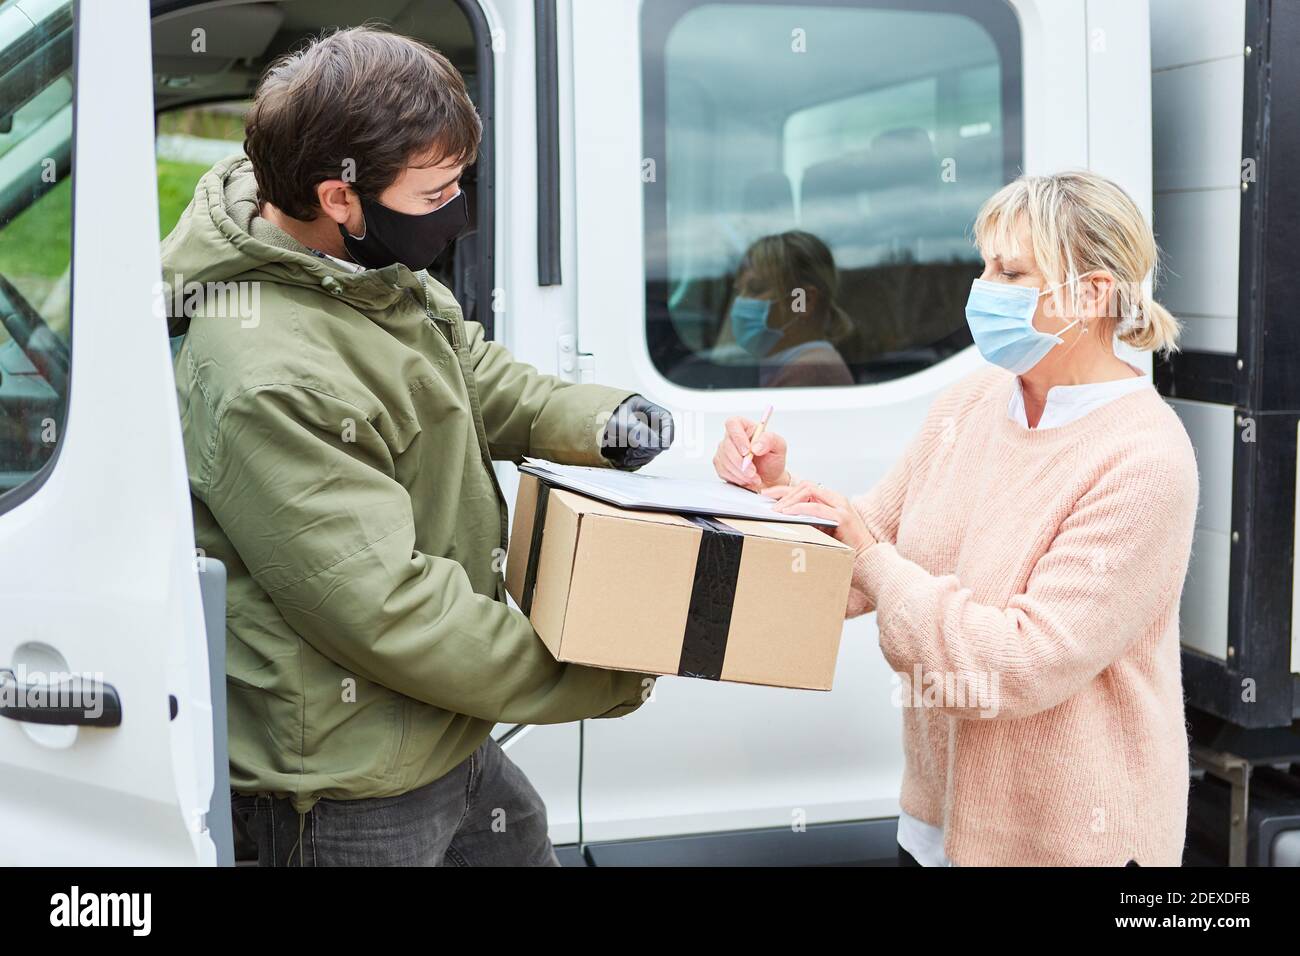 Le client ayant un masque facial donne la signature du service de livraison de colis pour livraison de colis dans la rue Banque D'Images